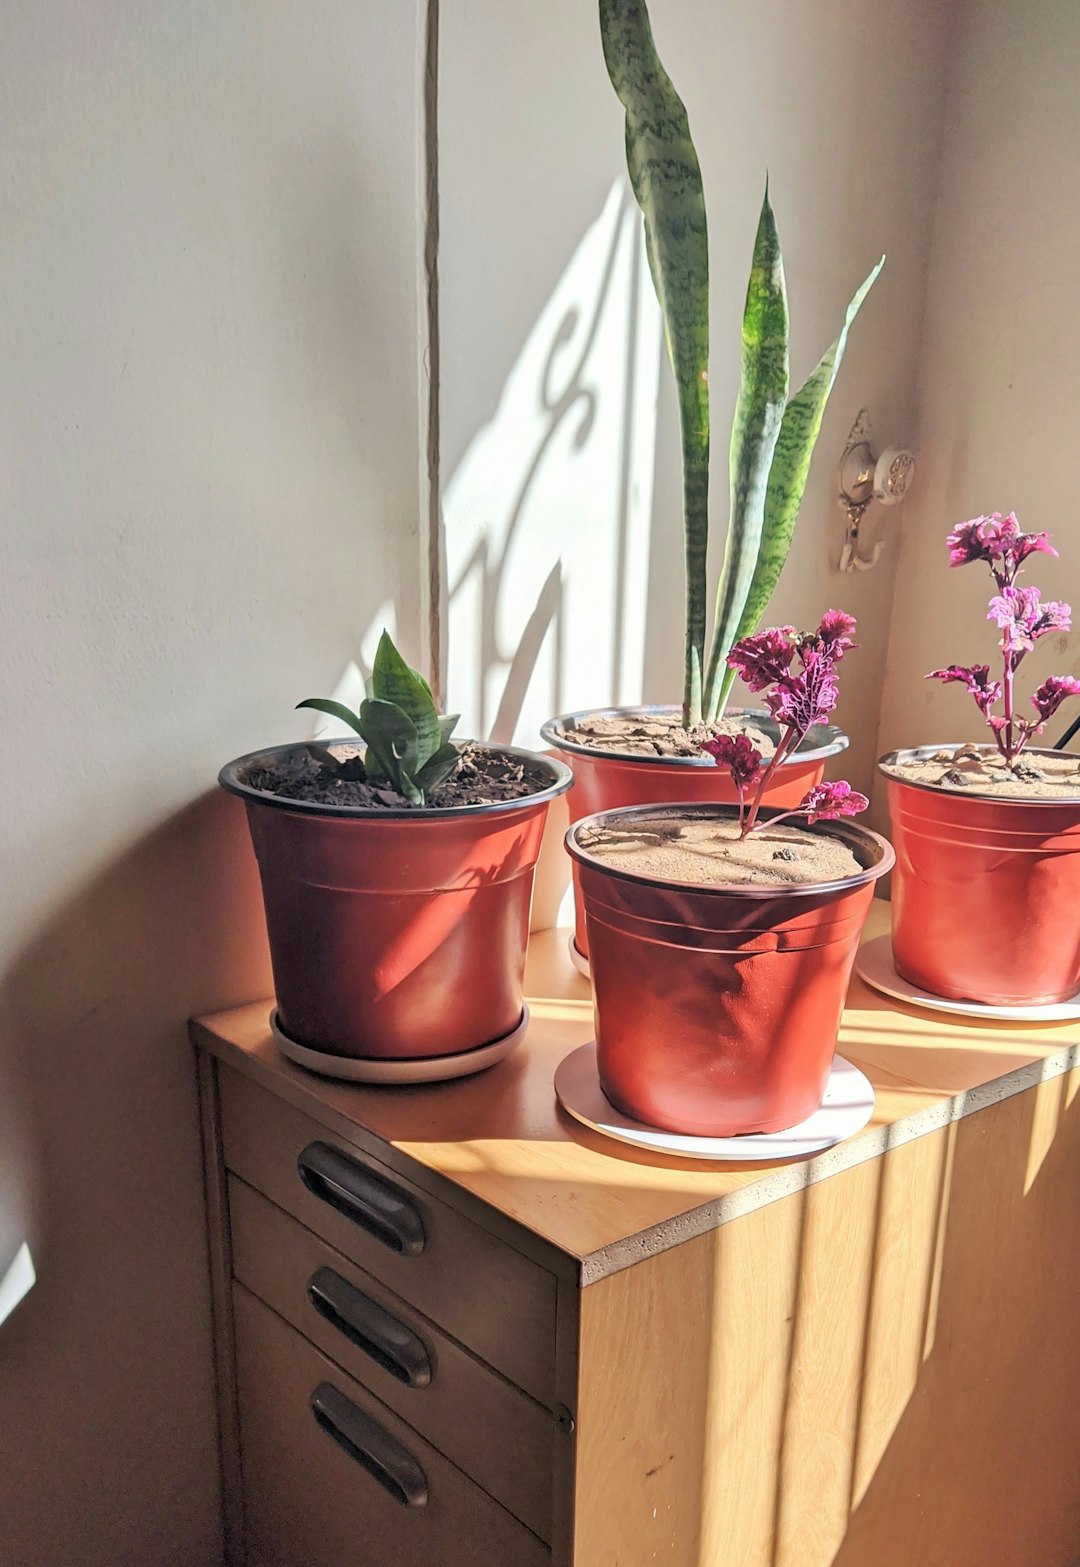 Joyus plant in their happy pots 